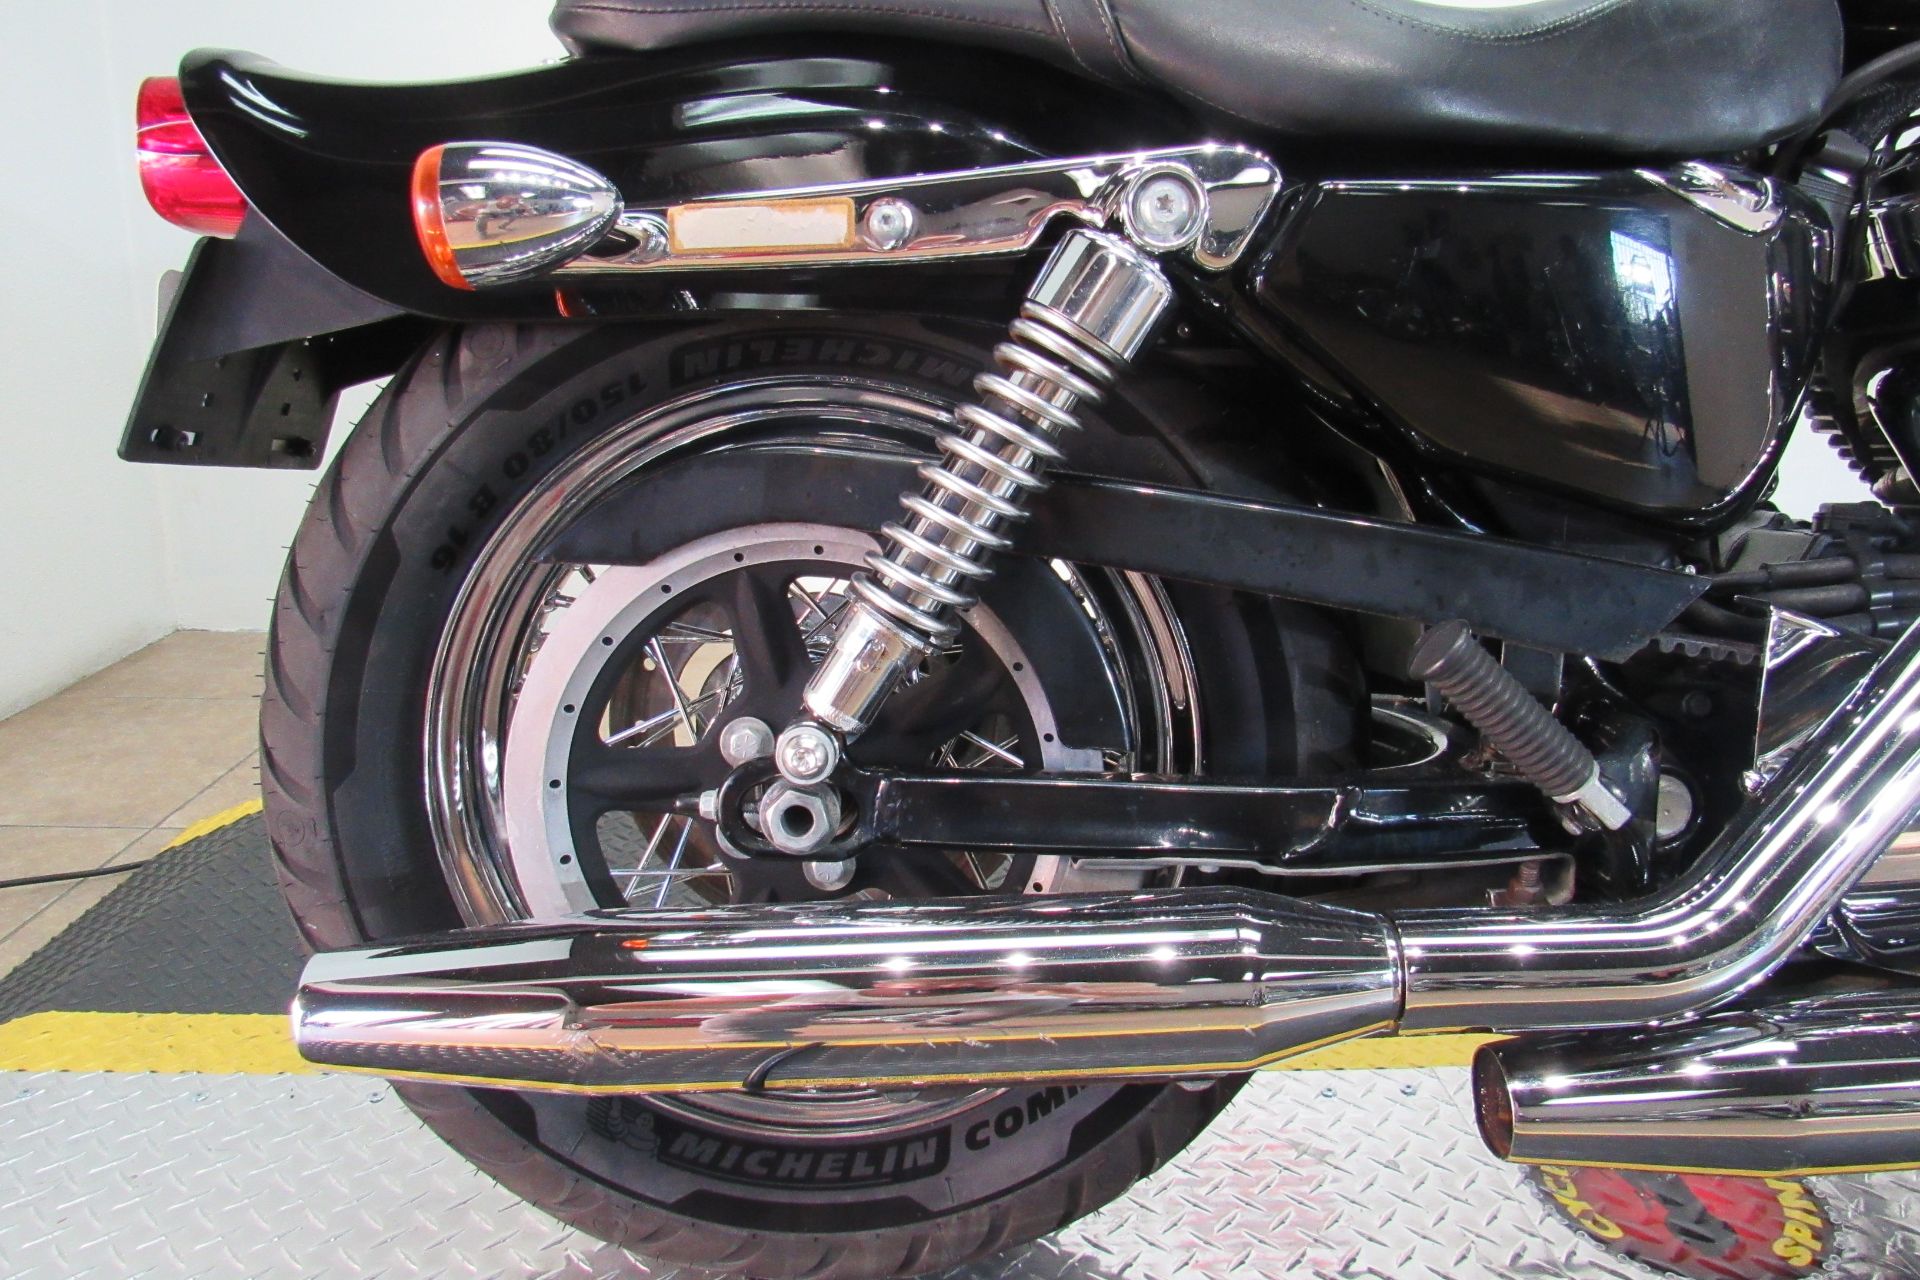 2008 Harley-Davidson Sportster® 1200 Custom in Temecula, California - Photo 32